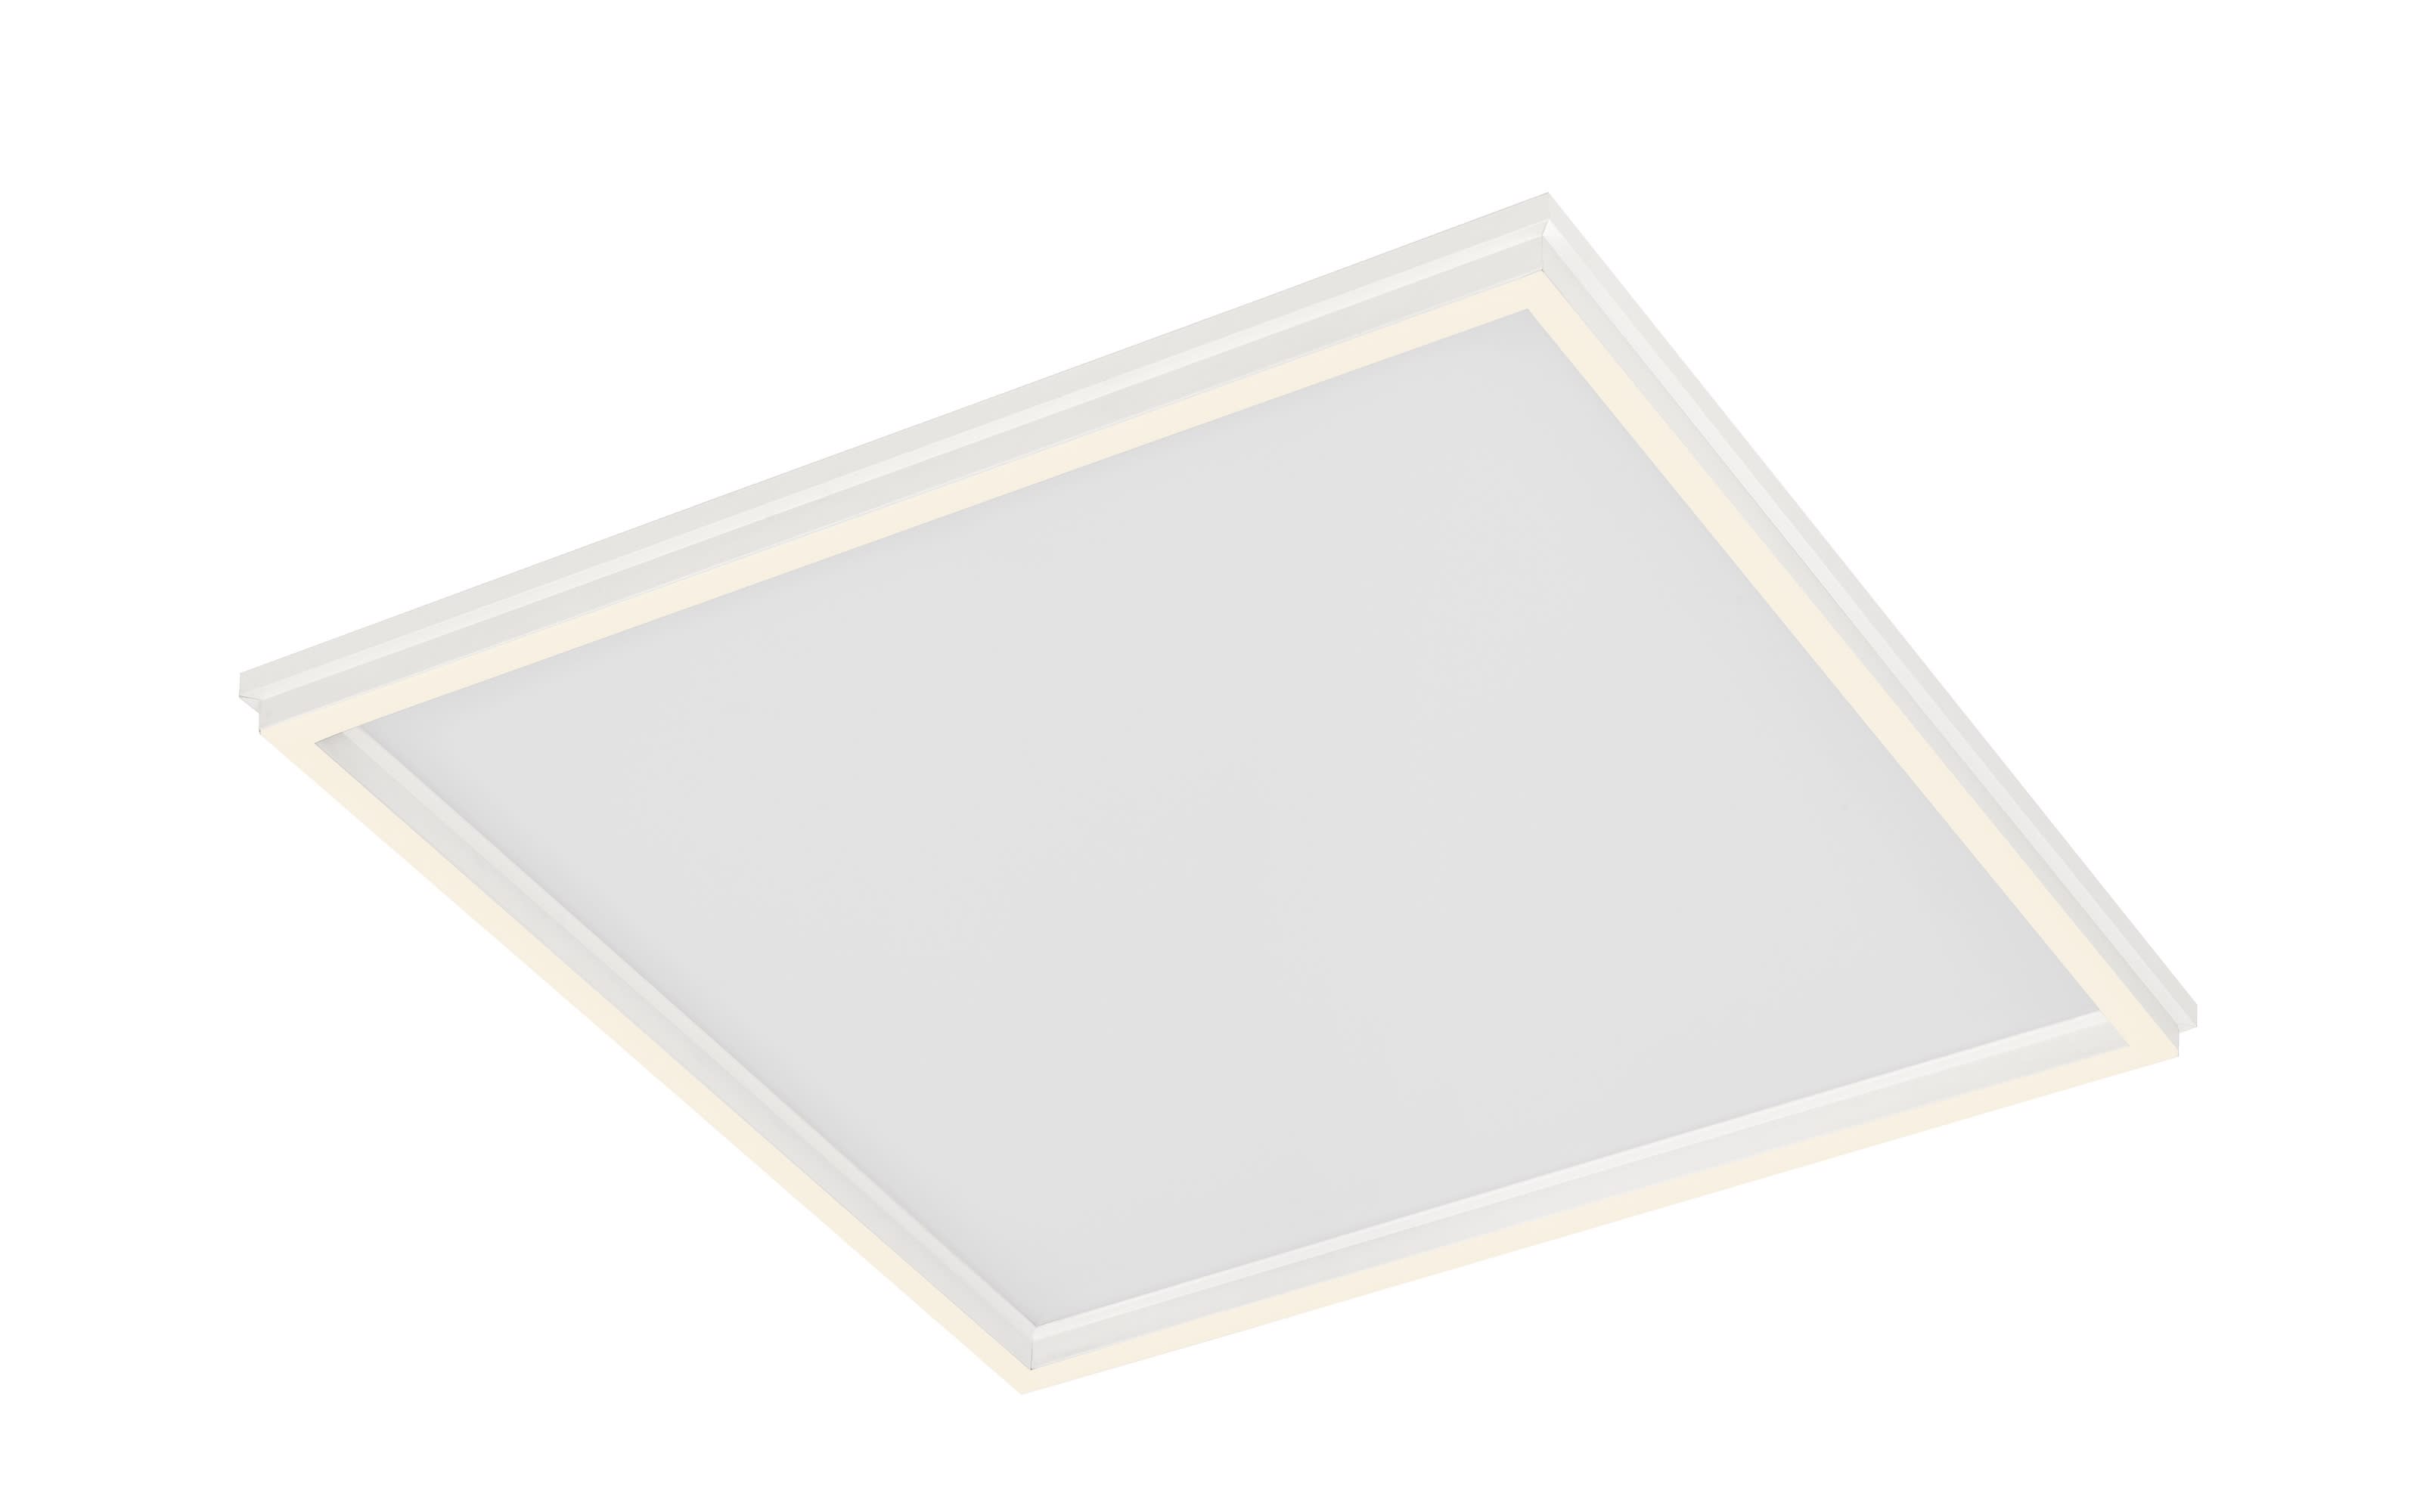 LED-Deckenleuchte Duo in weiß, 45 x 45 cm